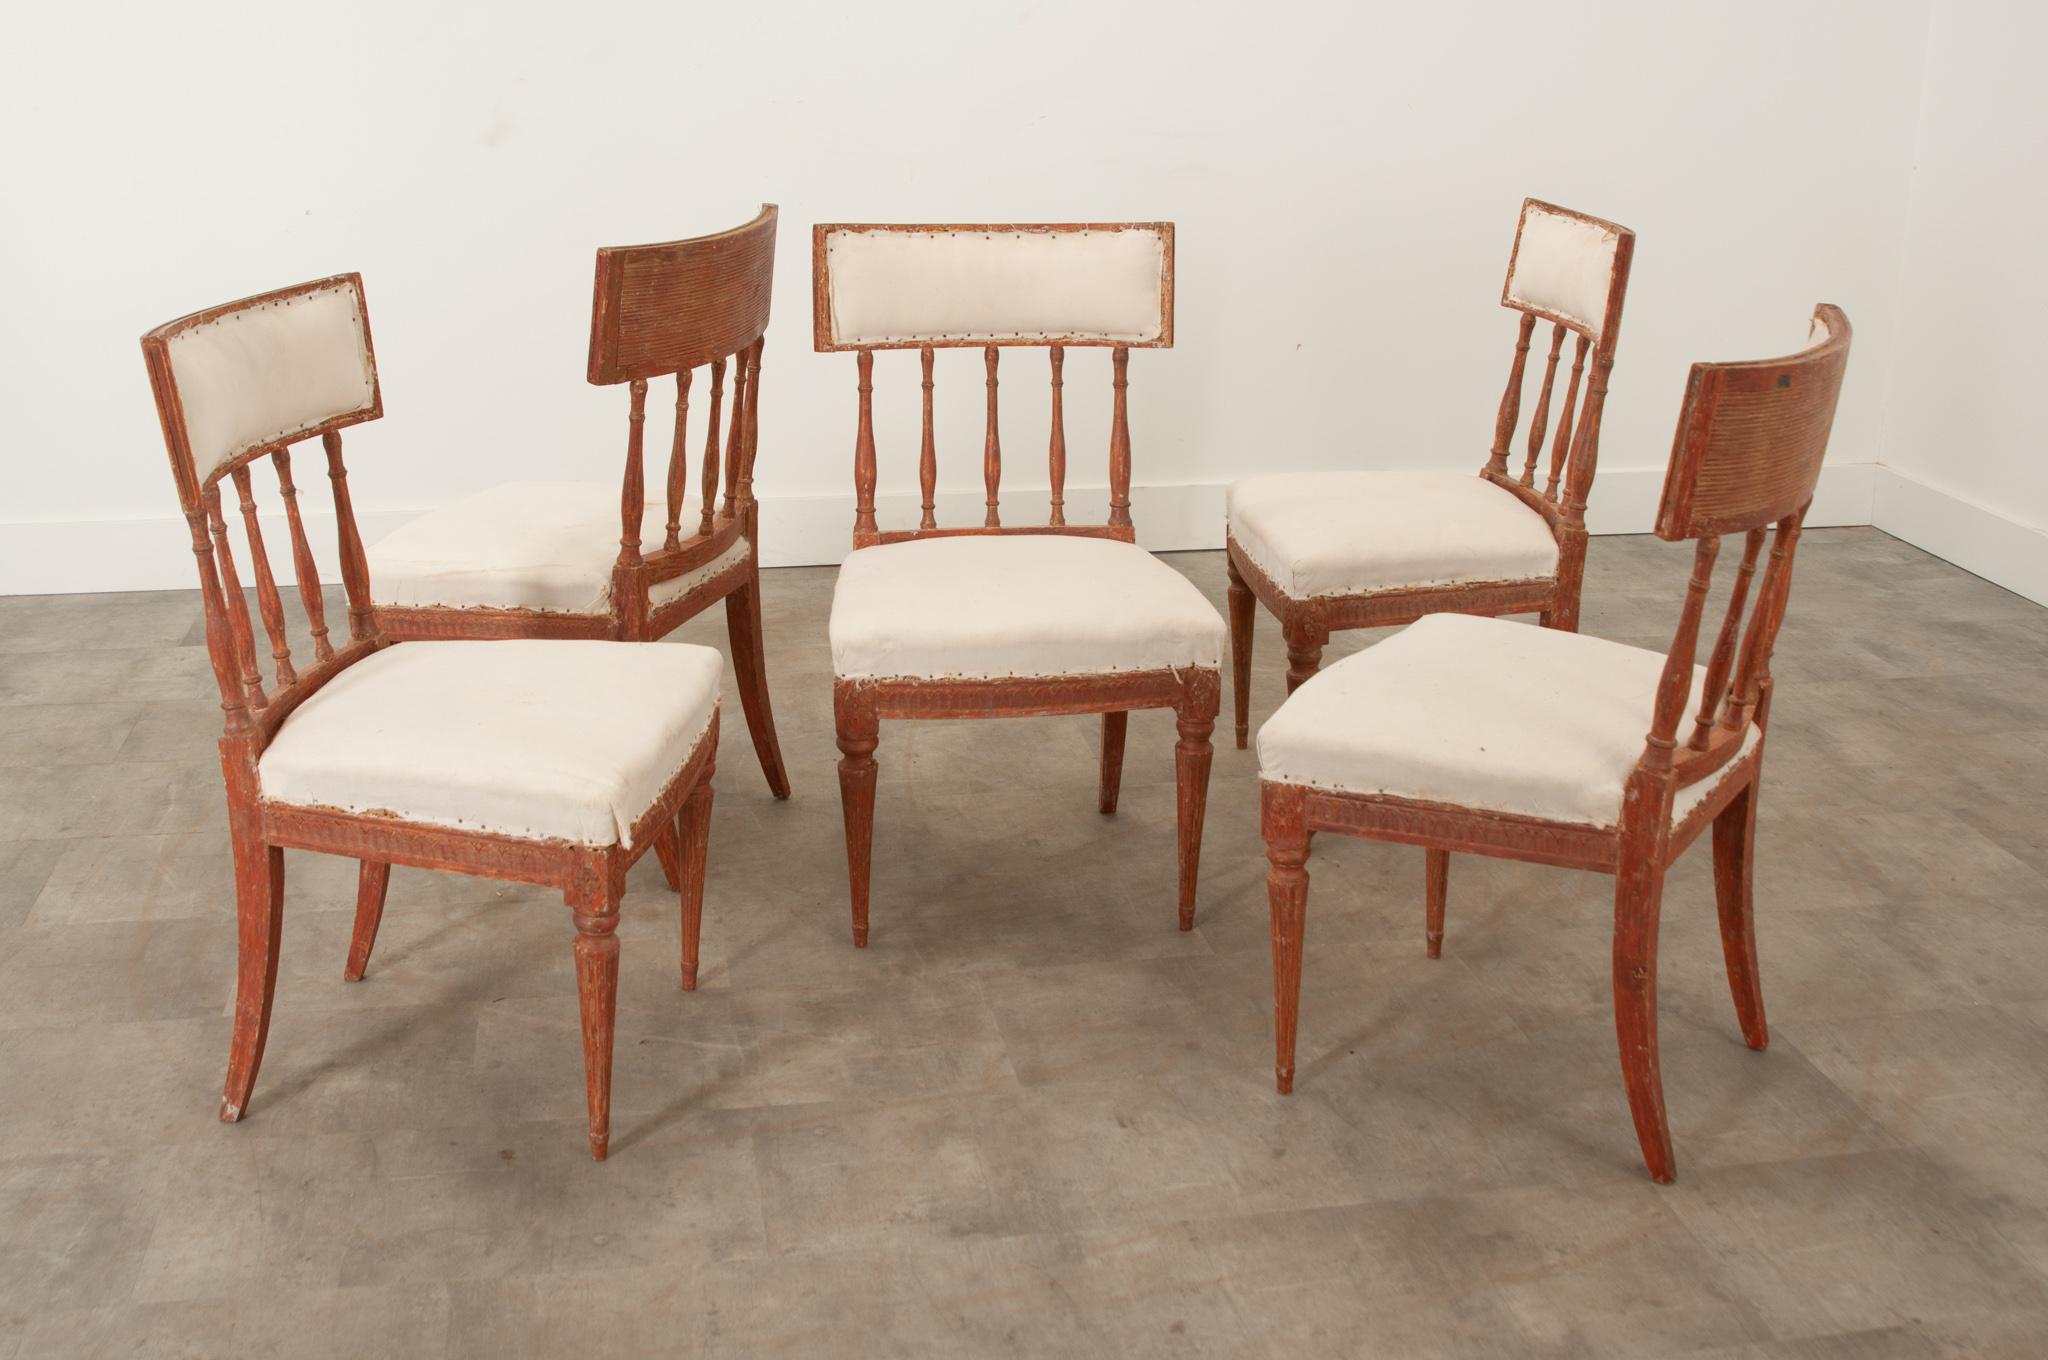 Un ensemble de cinq chaises de salle à manger de style gustavien, vers 1810, avec un potentiel fantastique dans n'importe quel espace. Les dossiers incurvés présentent des détails de cannelures sur le dos et semblent suspendus par des fuseaux